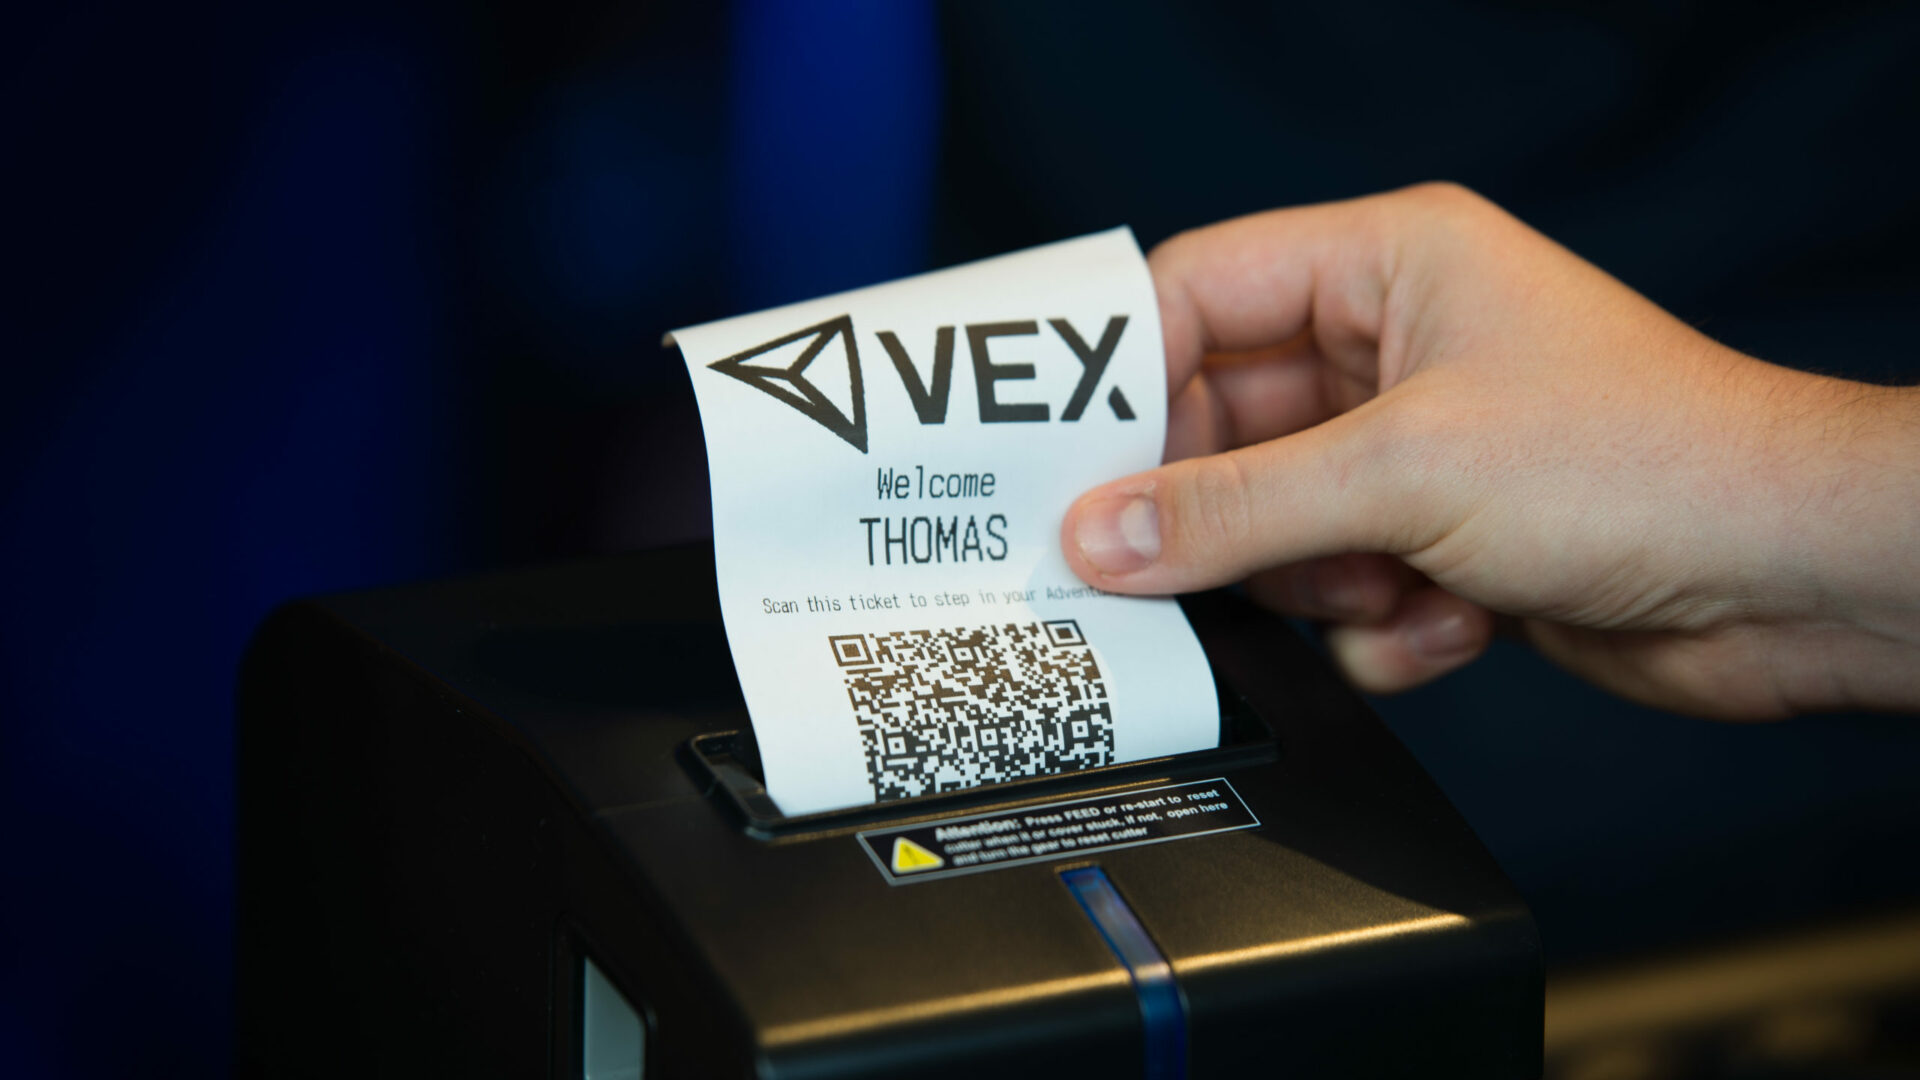 Sistema de tickets fácil de usar para registrarse y VEX eSports League